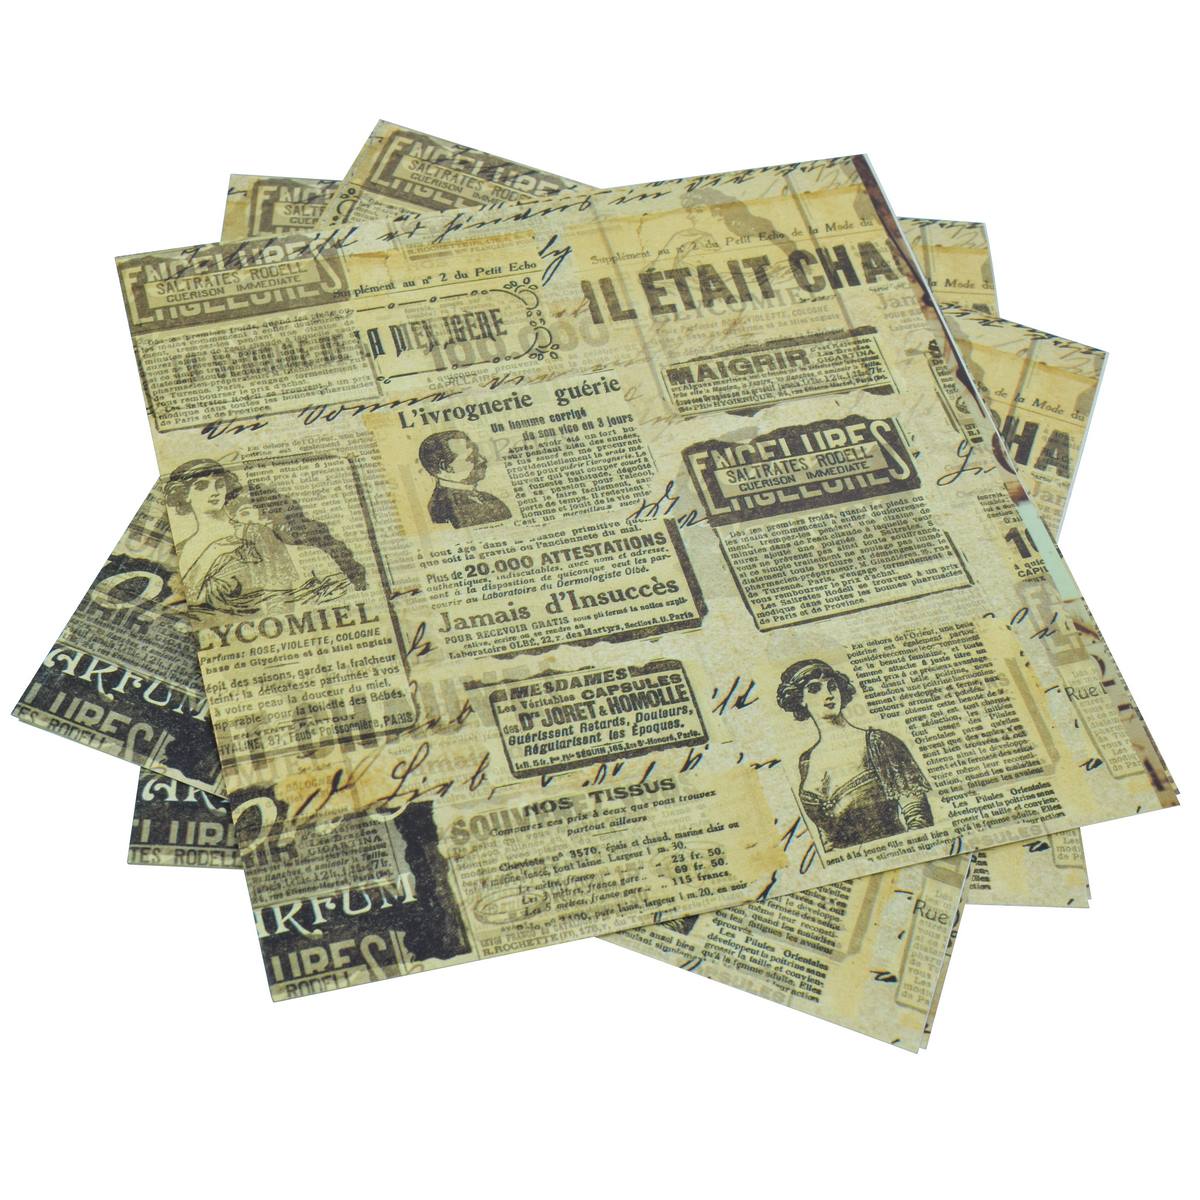 jags-mumbai Decoupage Jags Decoupage Paper Vintage News Paper JDPG-29